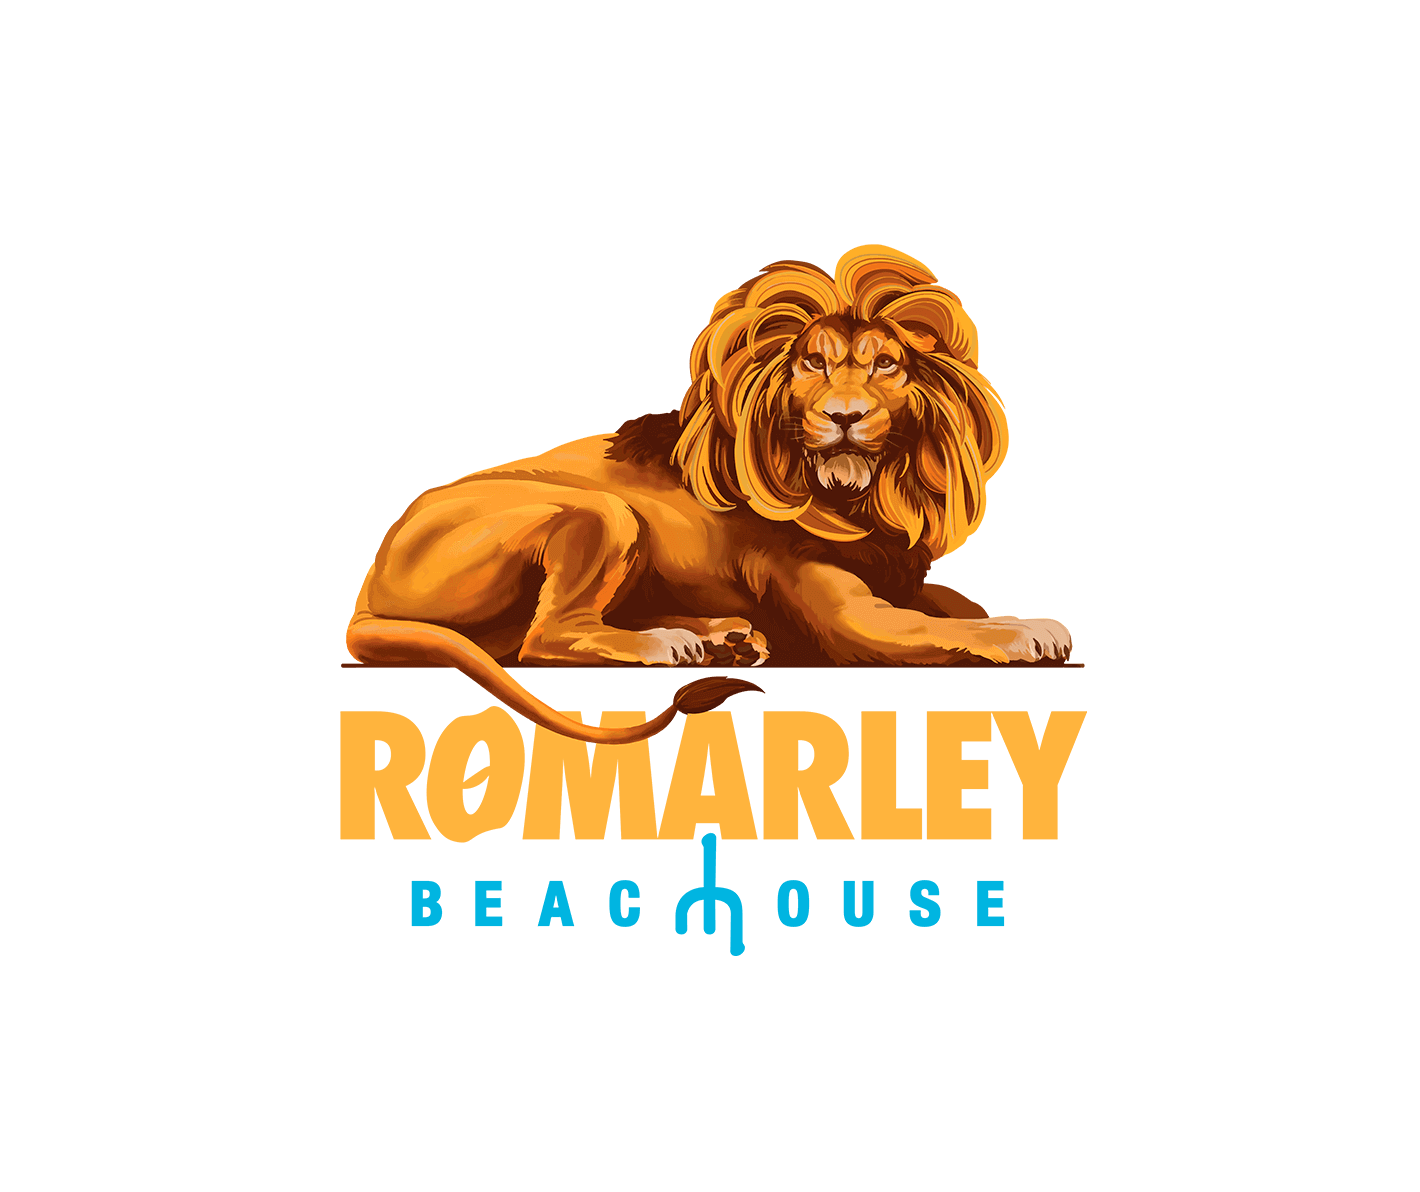 Romarley beach house